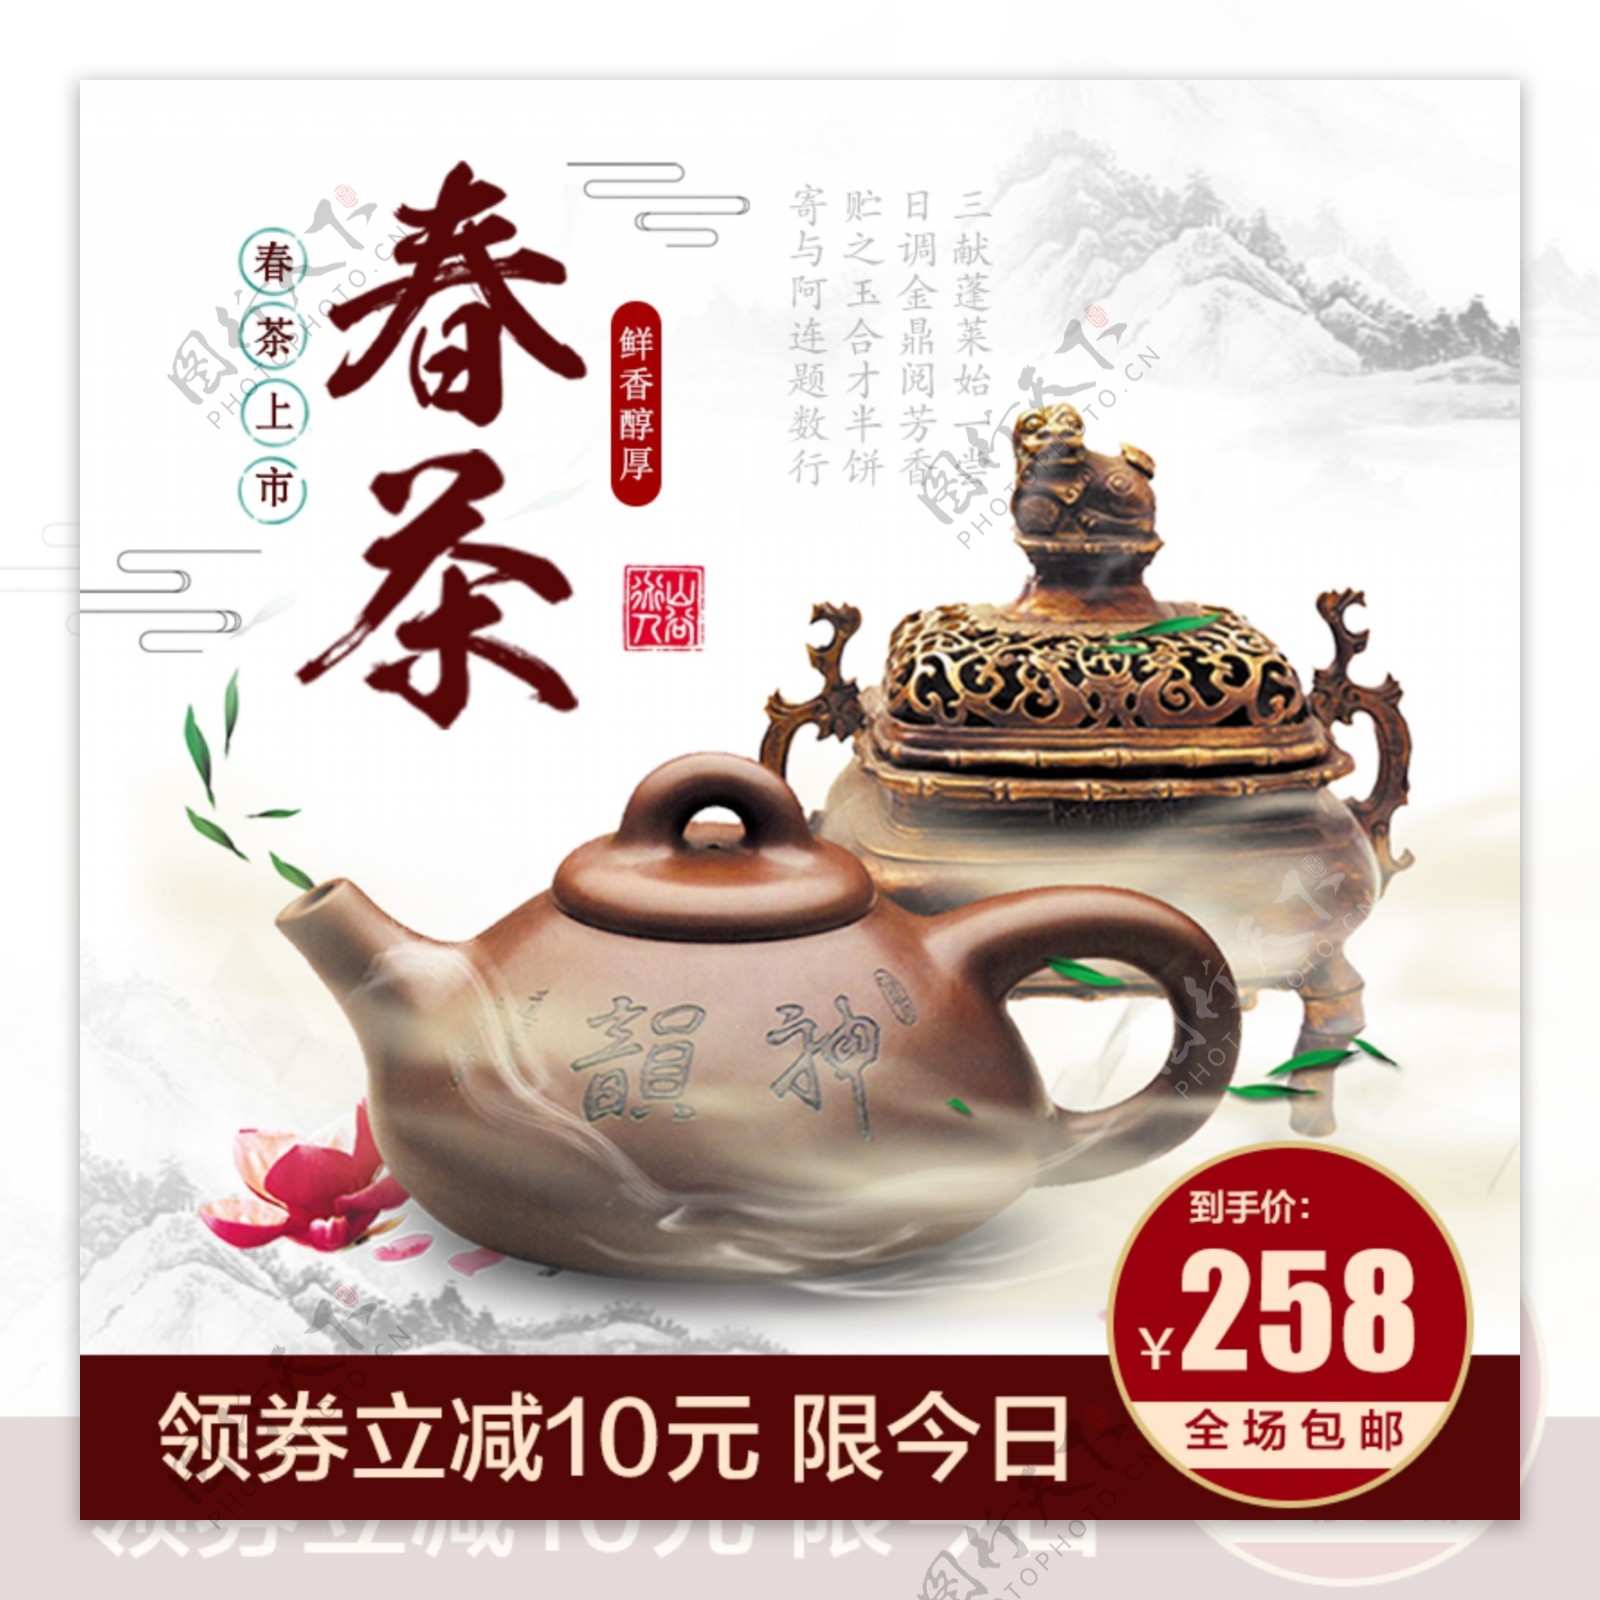 茶饮主图茶杯茶壶中国风山水